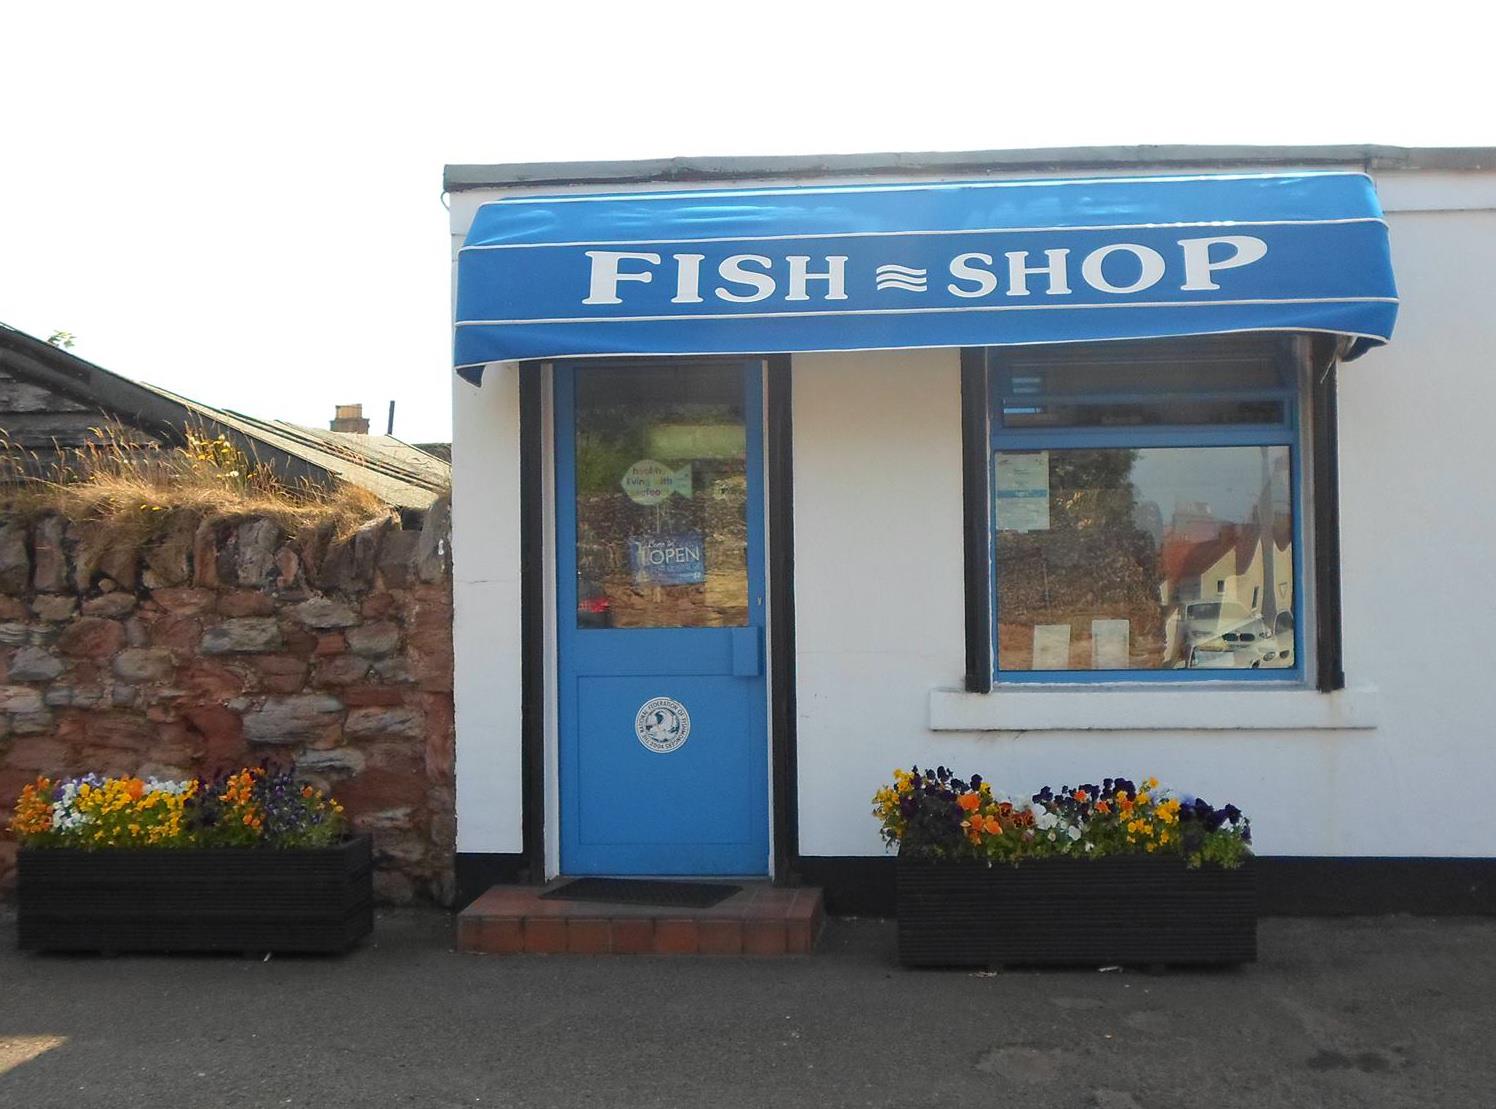 Fish shop front